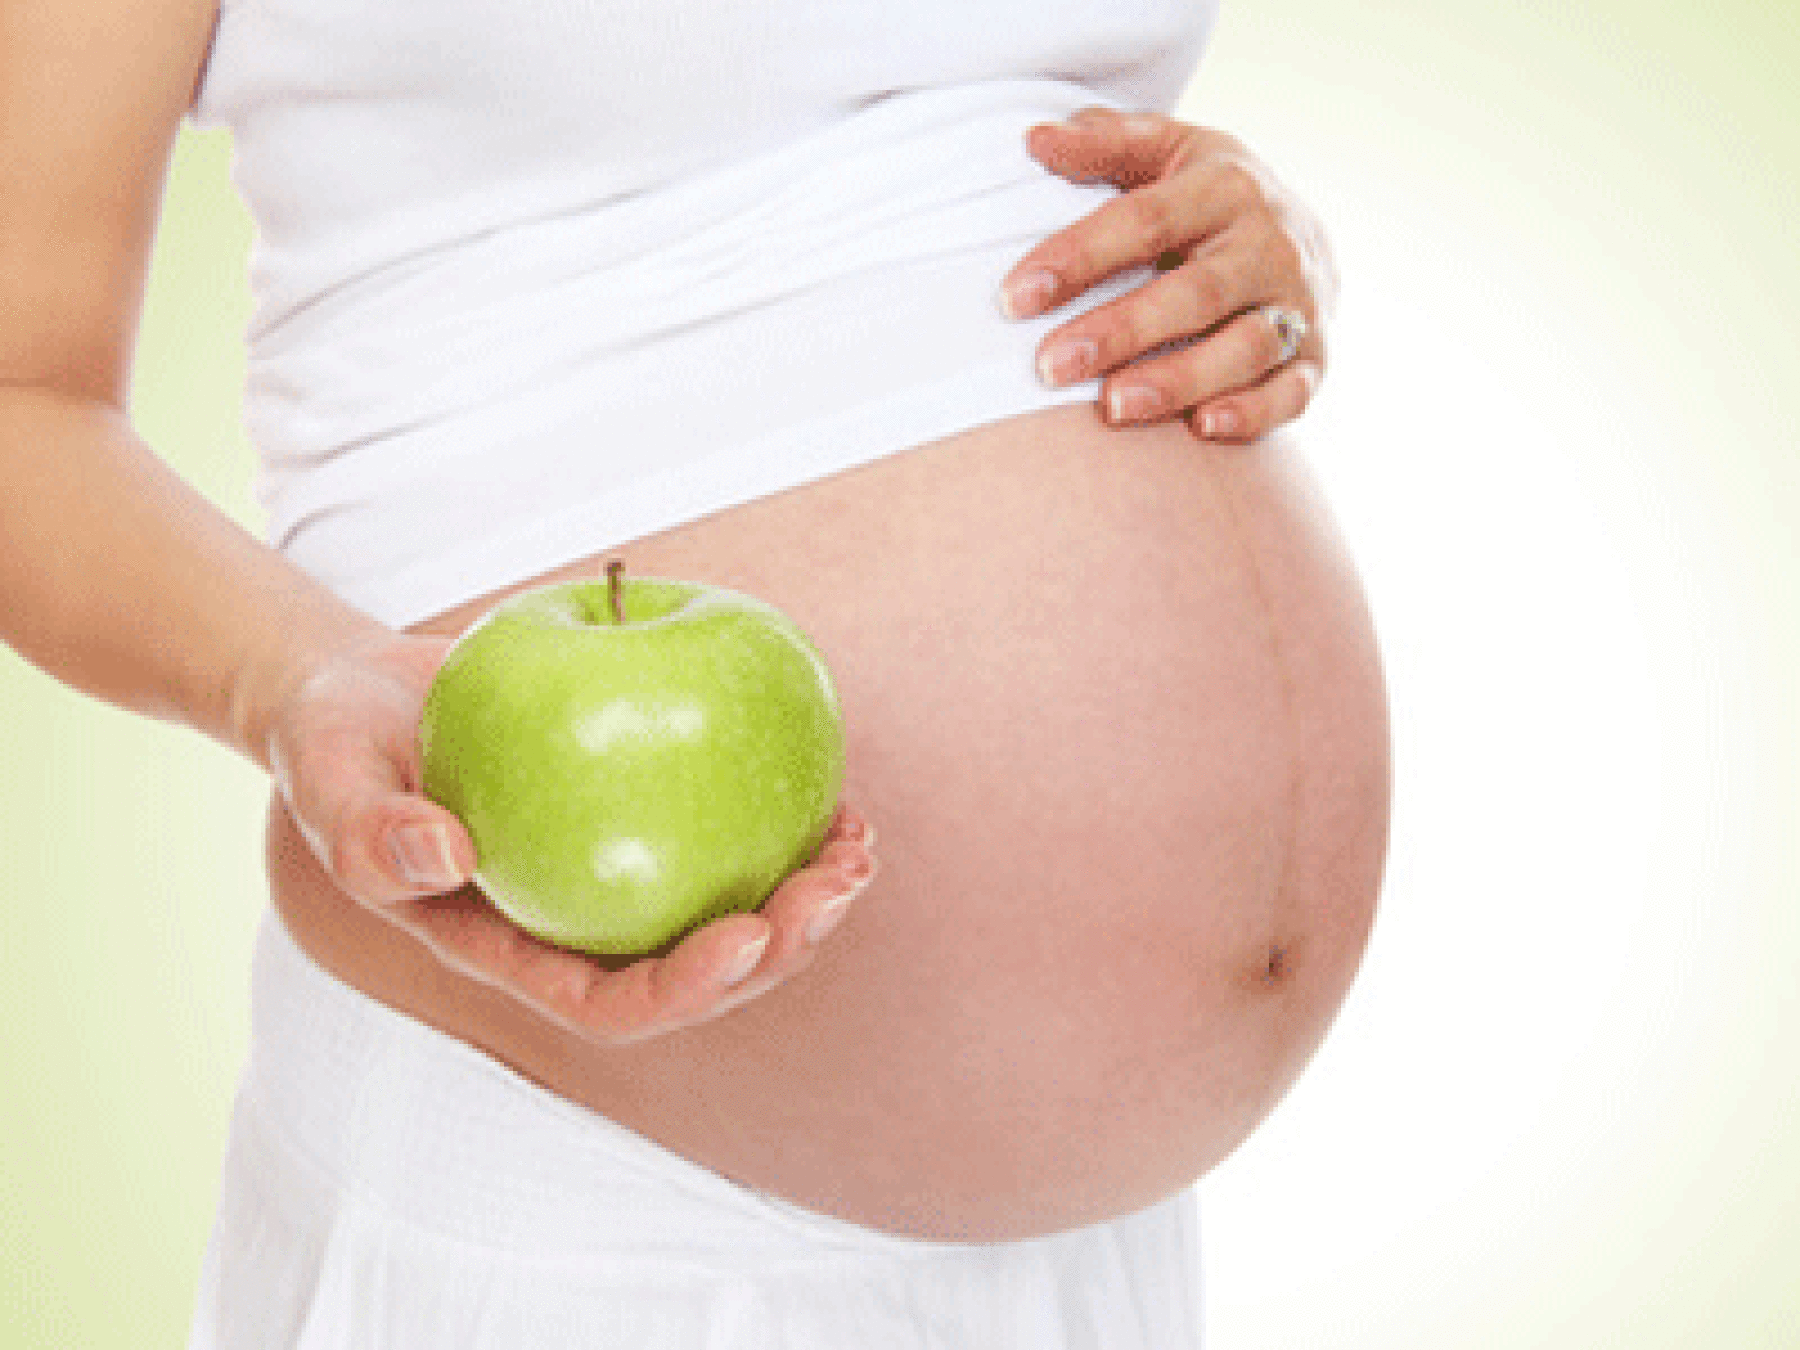 Alimentation et grossesse : tout ce qu'il faut savoir